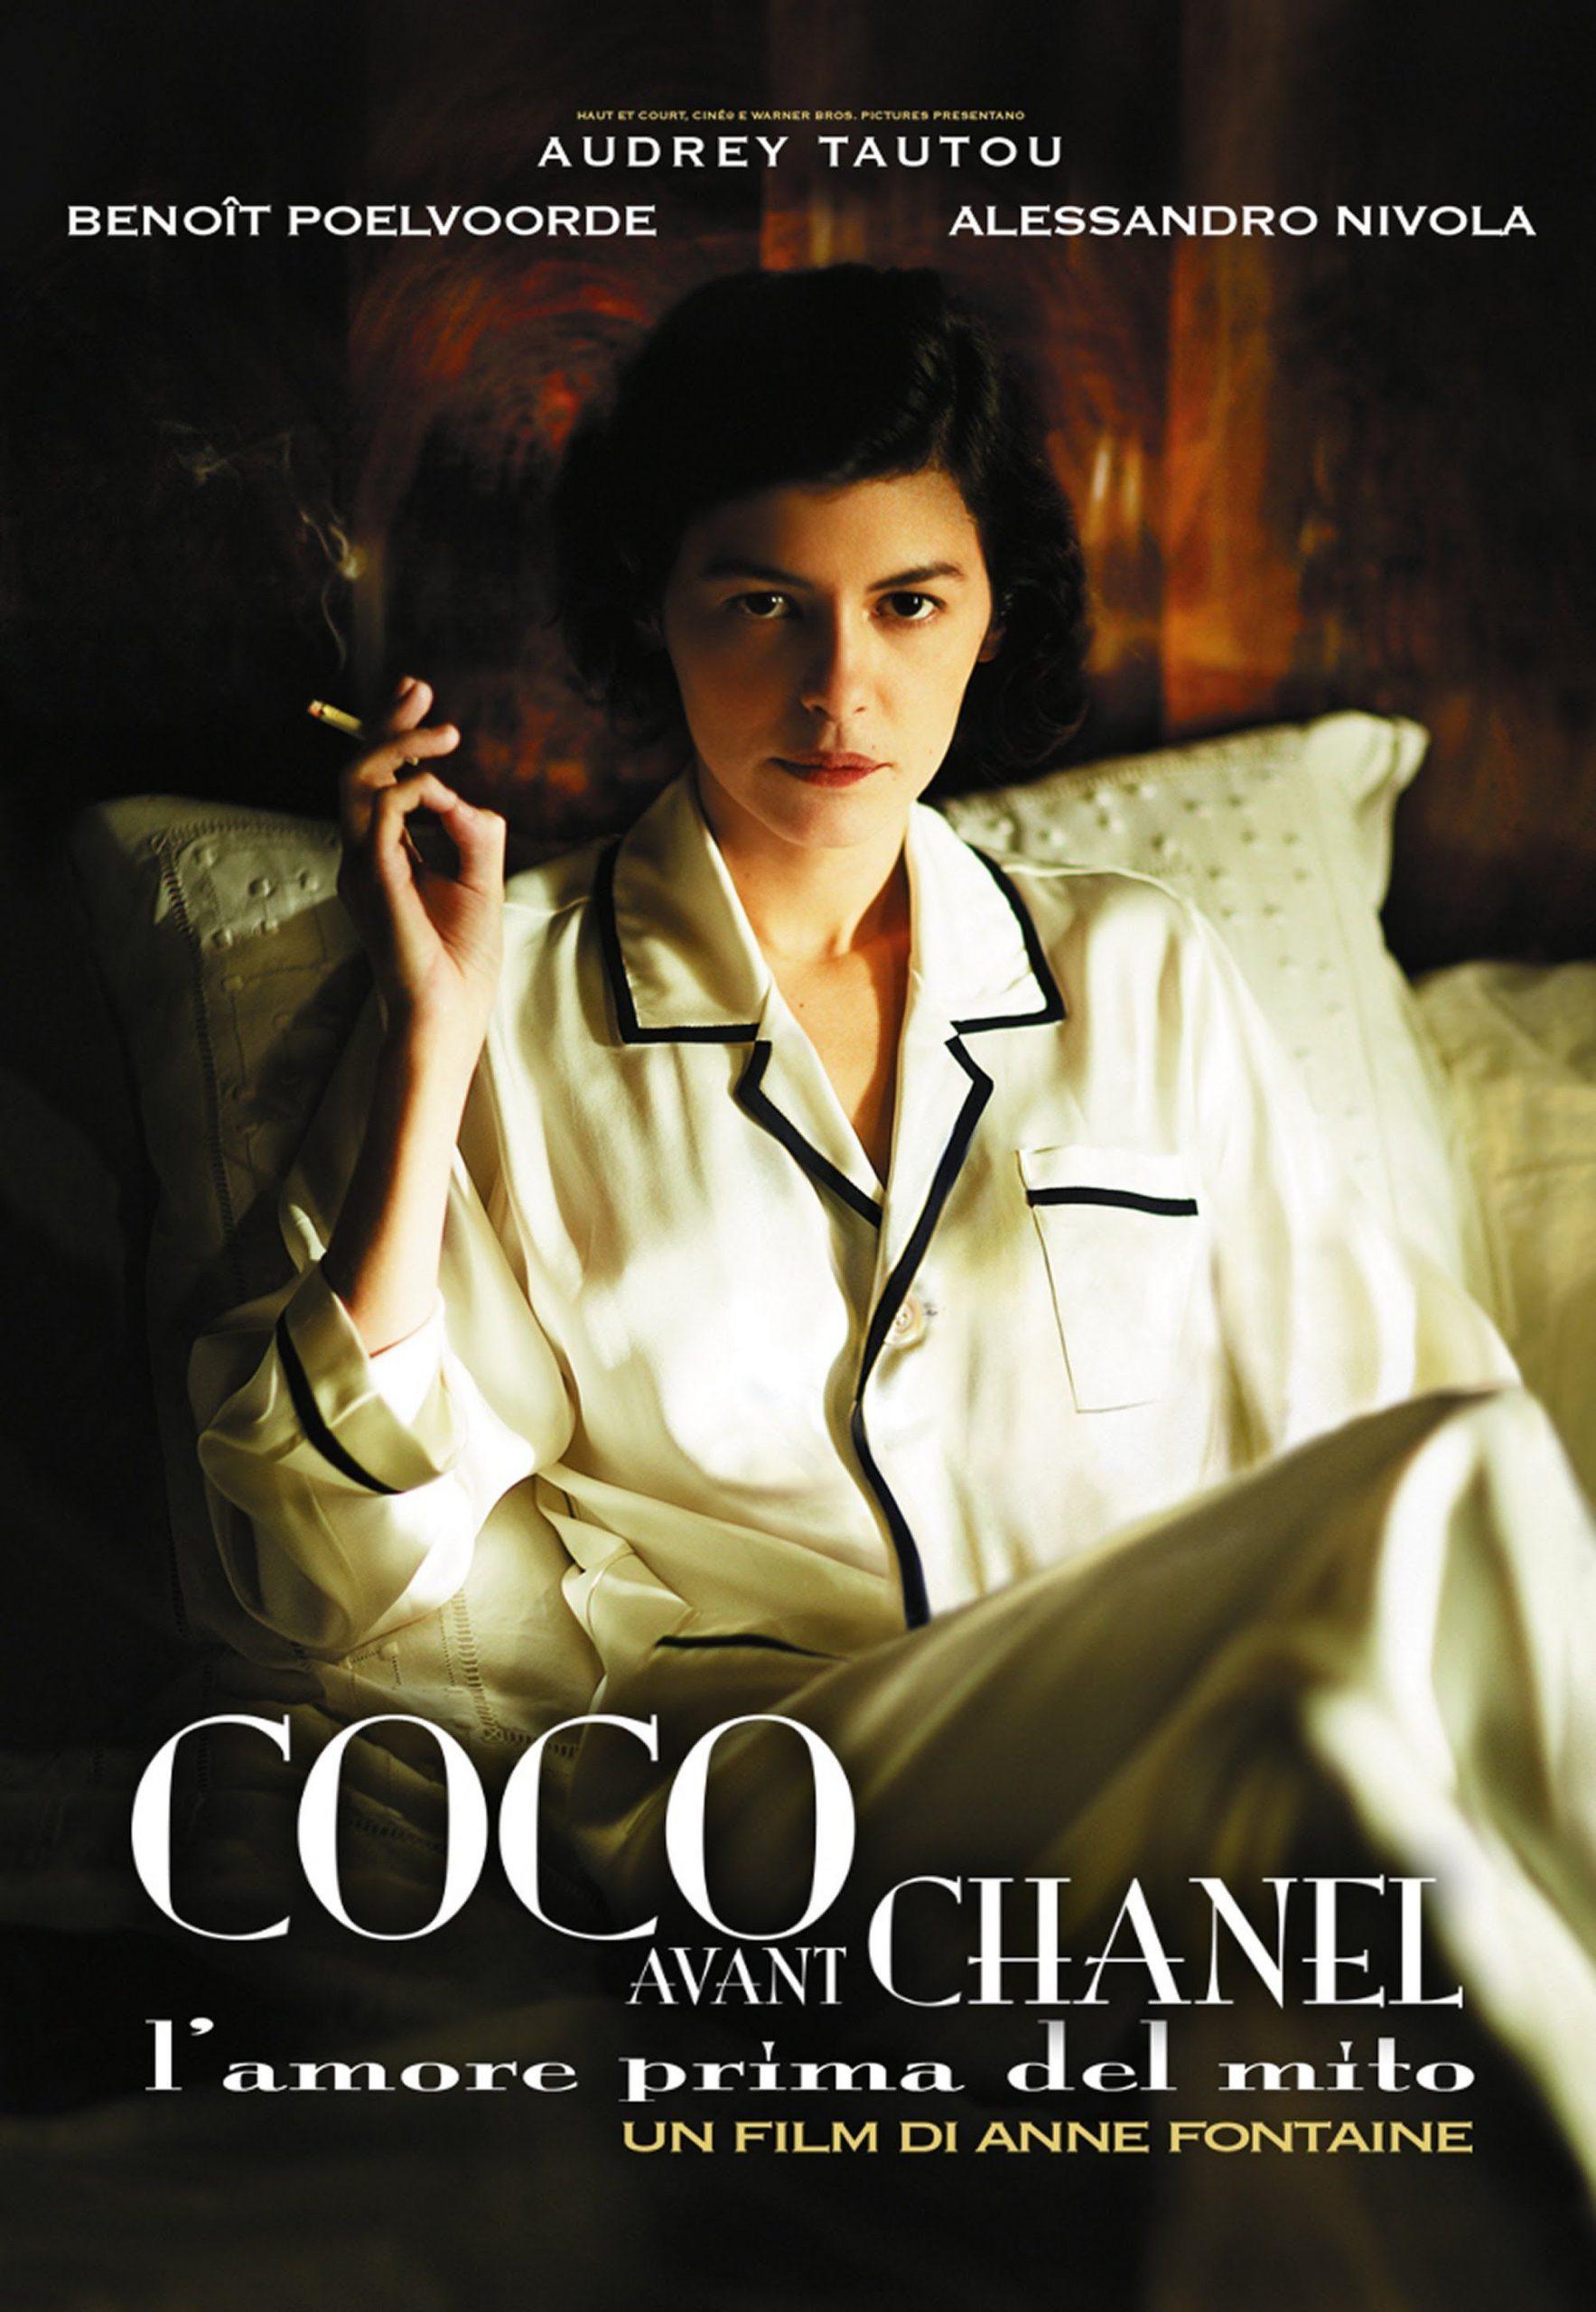 Coco avant Chanel – L’amore prima del mito [HD] (2009)